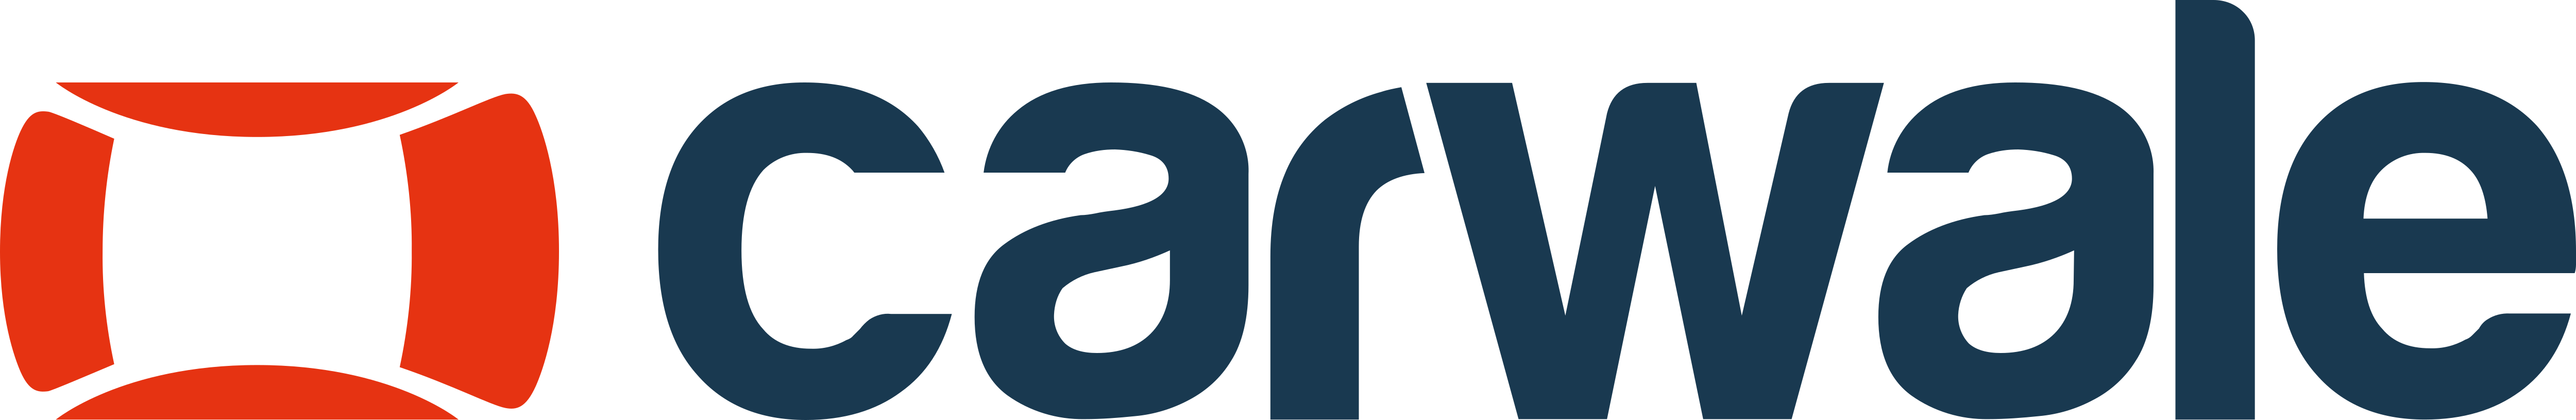 CarWale – Logos Download